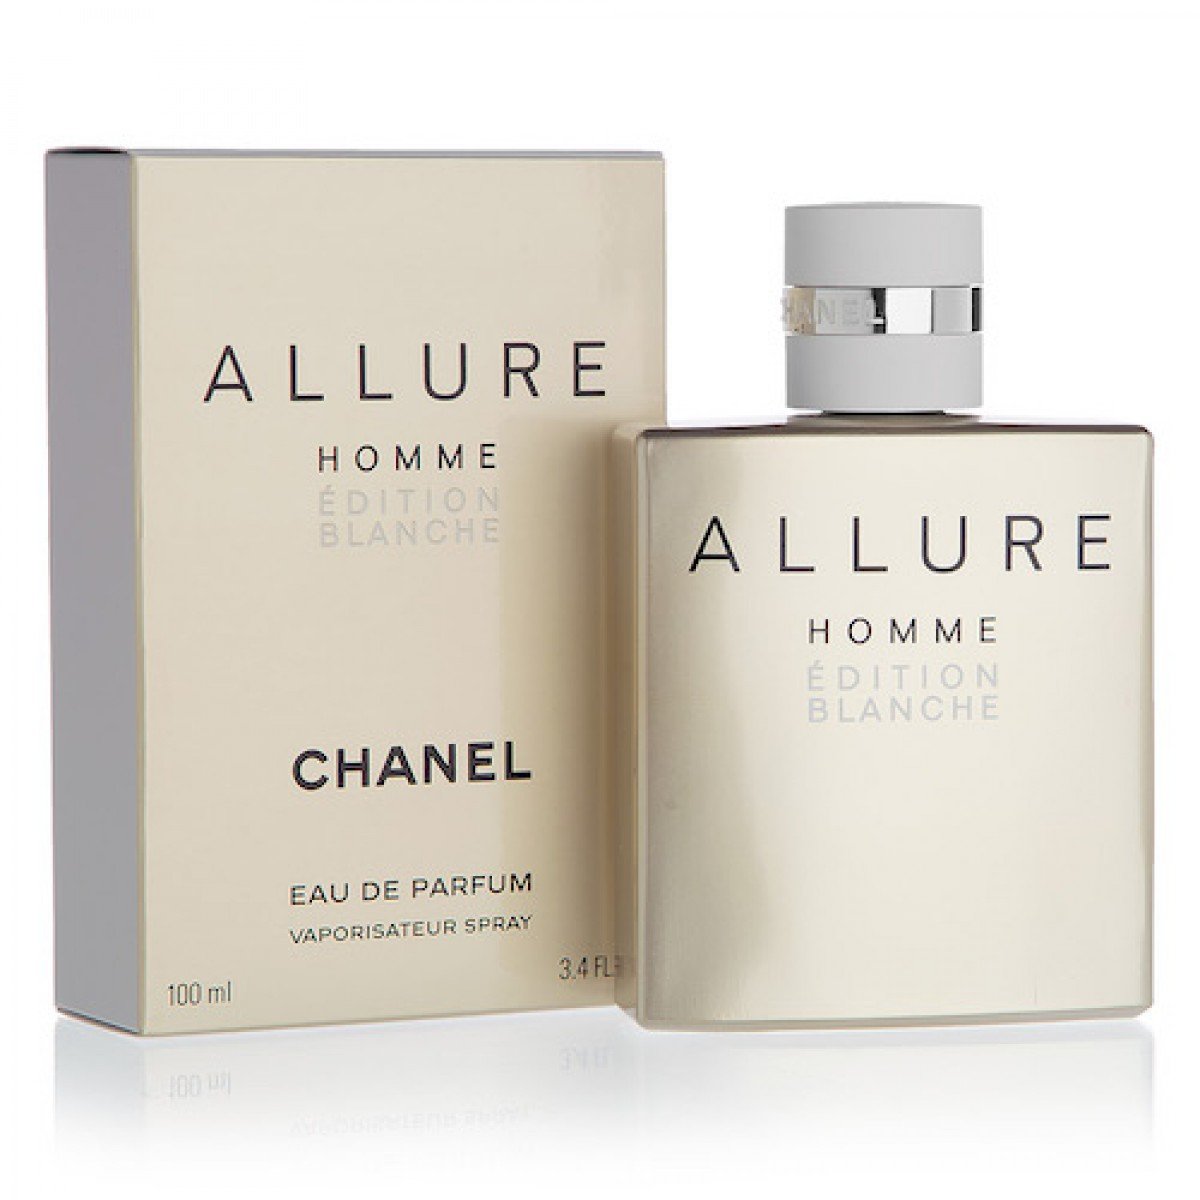 Туалетная вода home. Chanel Allure homme Edition Blanche 100ml. Chanel Allure homme Edition Edition. Chanel Allure homme 100 ml. Chanel Allure homme Edition Blanche Eau de Parfum.